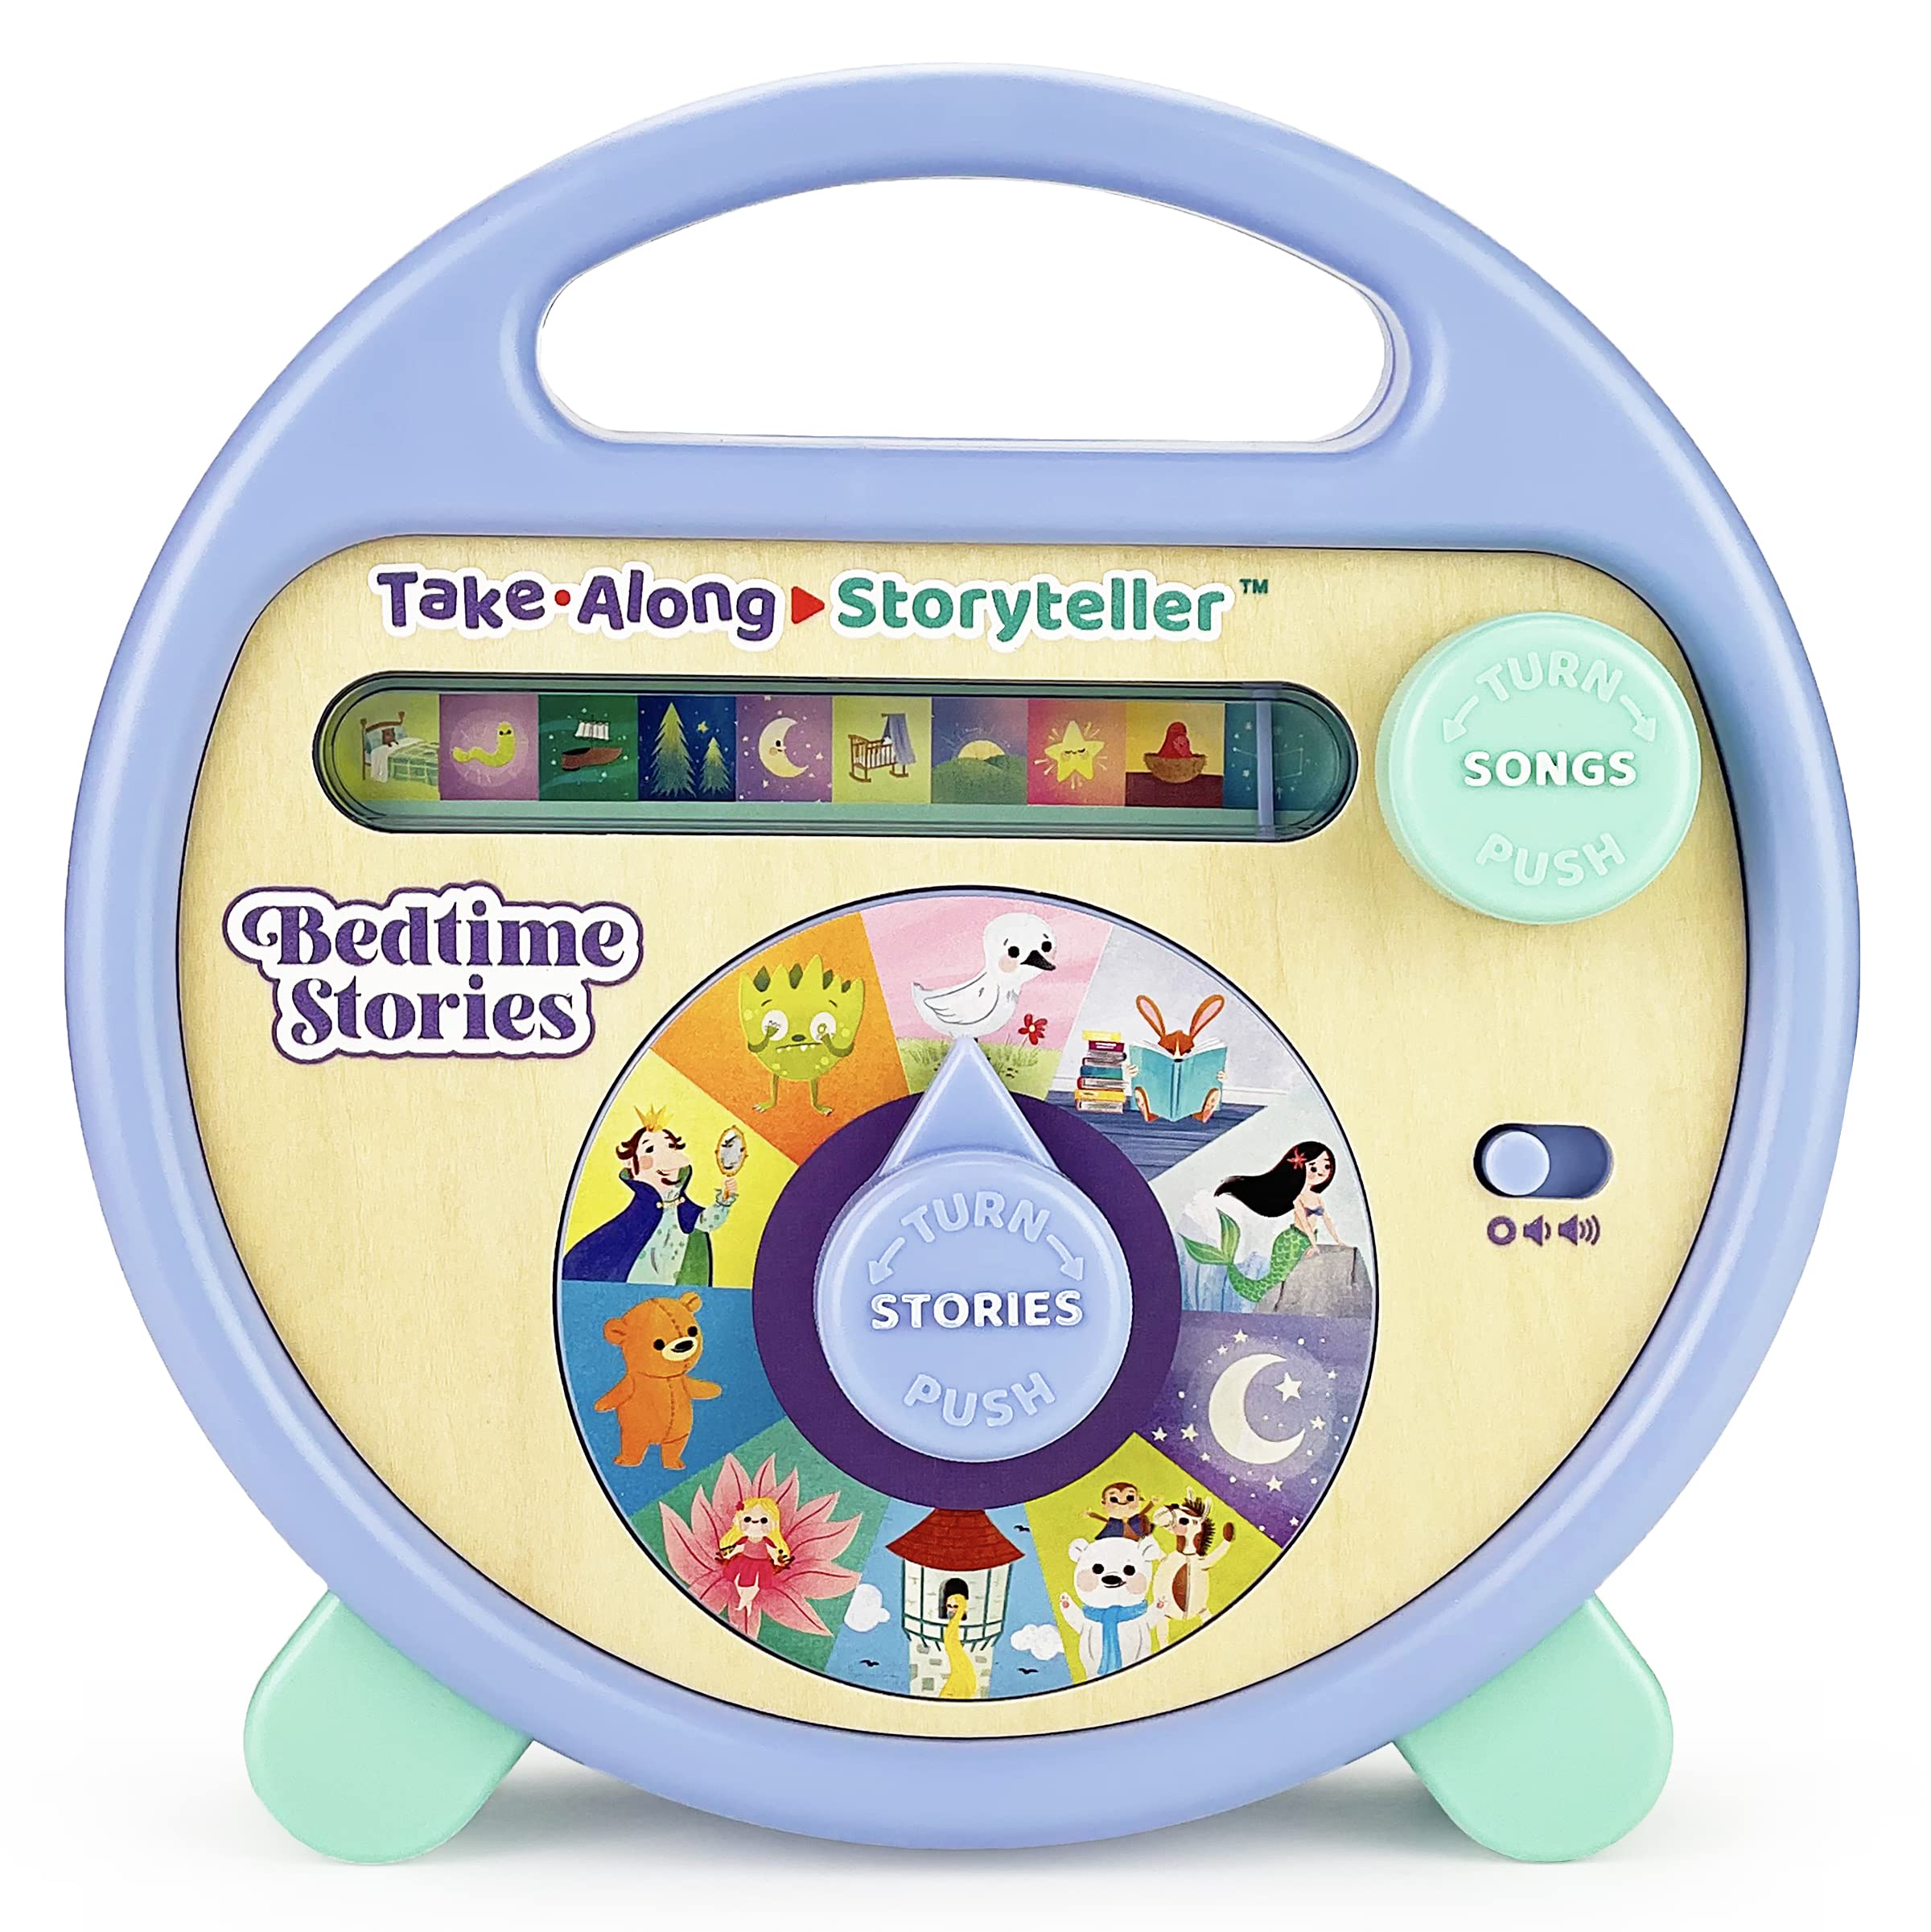 Take-Along Storyteller Bedtime Stories Interactive Electronic Take Along Storyteller with 11 Books, Ages 3-8